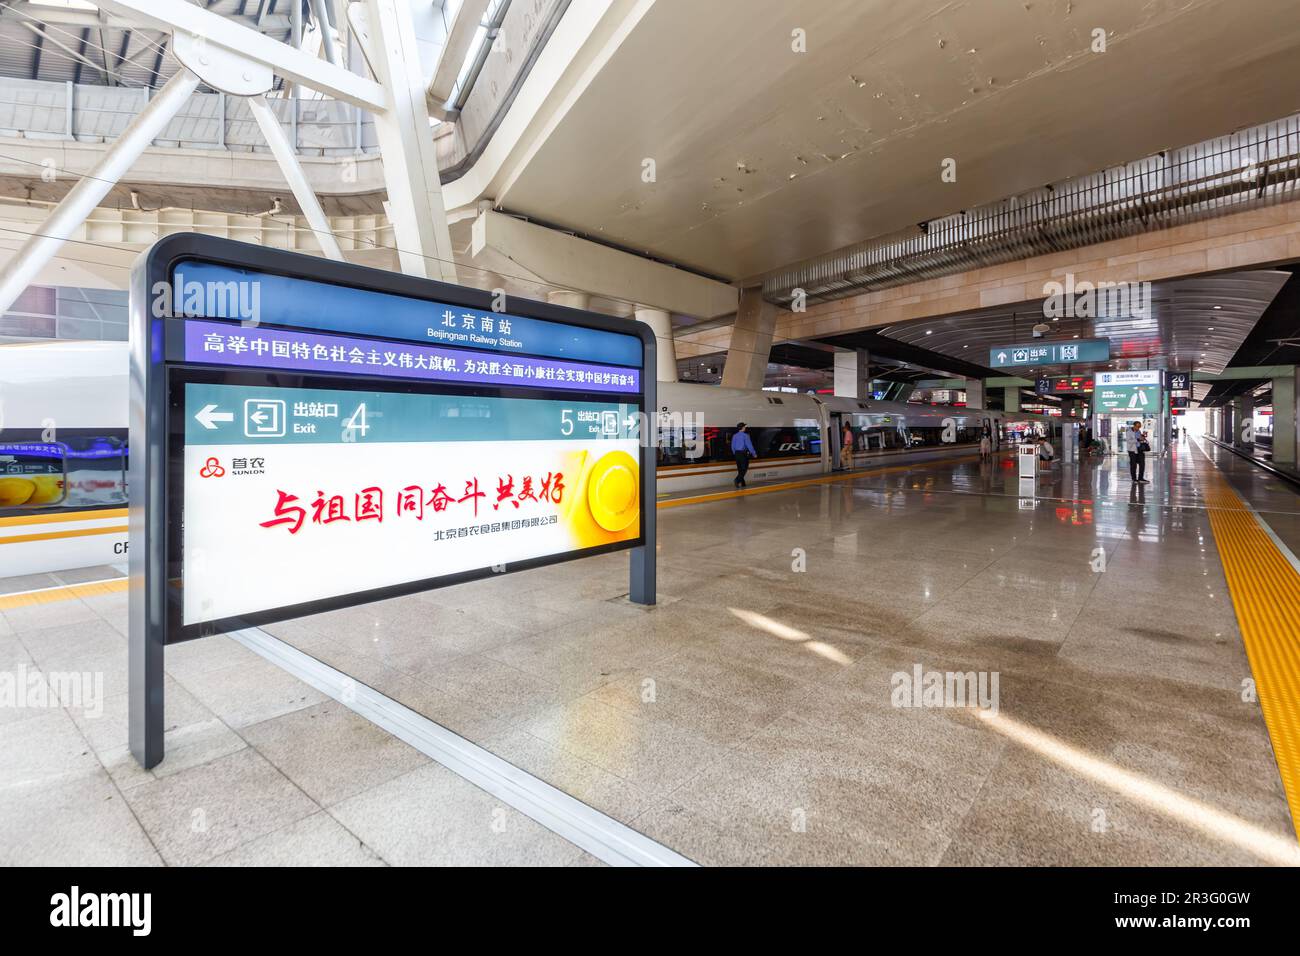 Bahnhof Peking Beijing South Railway Station Beijingnan en Chine Banque D'Images